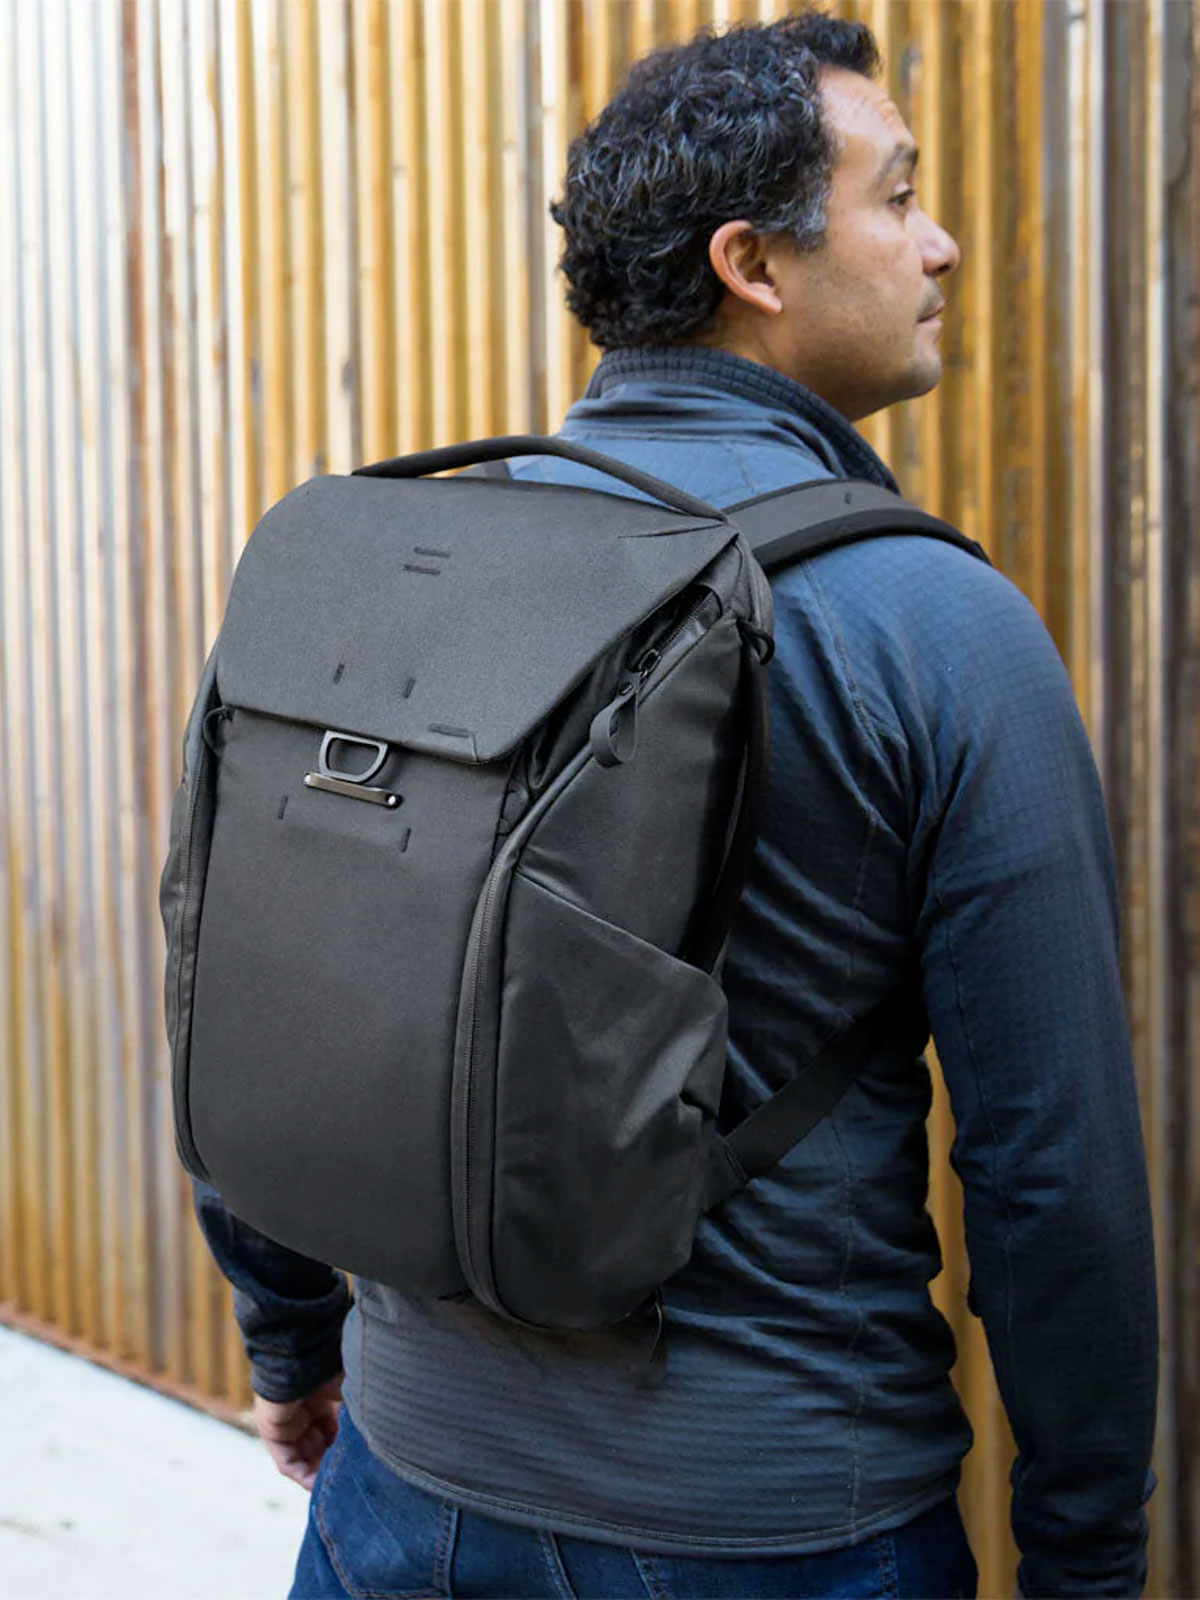 Everyday Backpack V2 30L